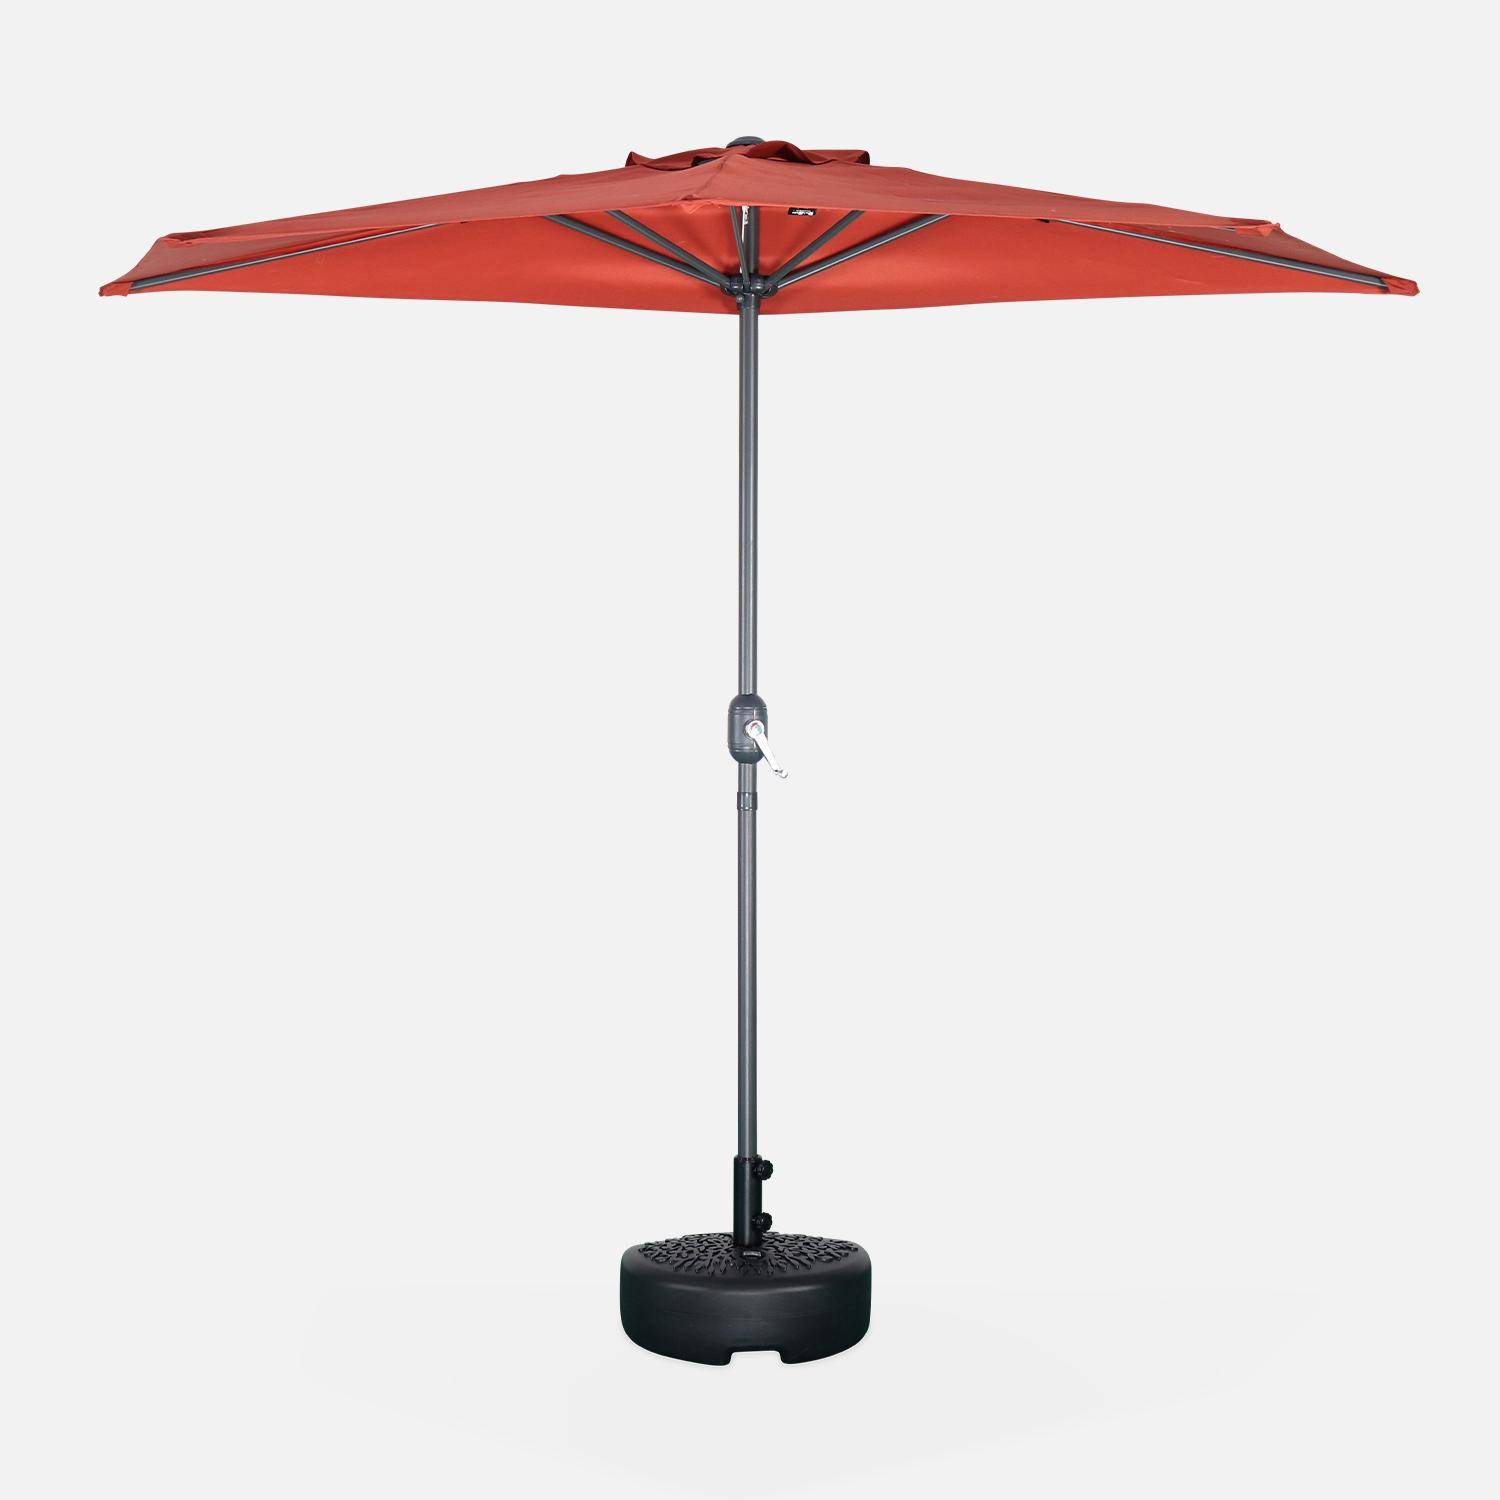  Guarda-chuva de varanda Ø250cm - CALVI - Meio guarda-chuva recto, haste em alumínio com pega de manivela, tecido terracota Photo2